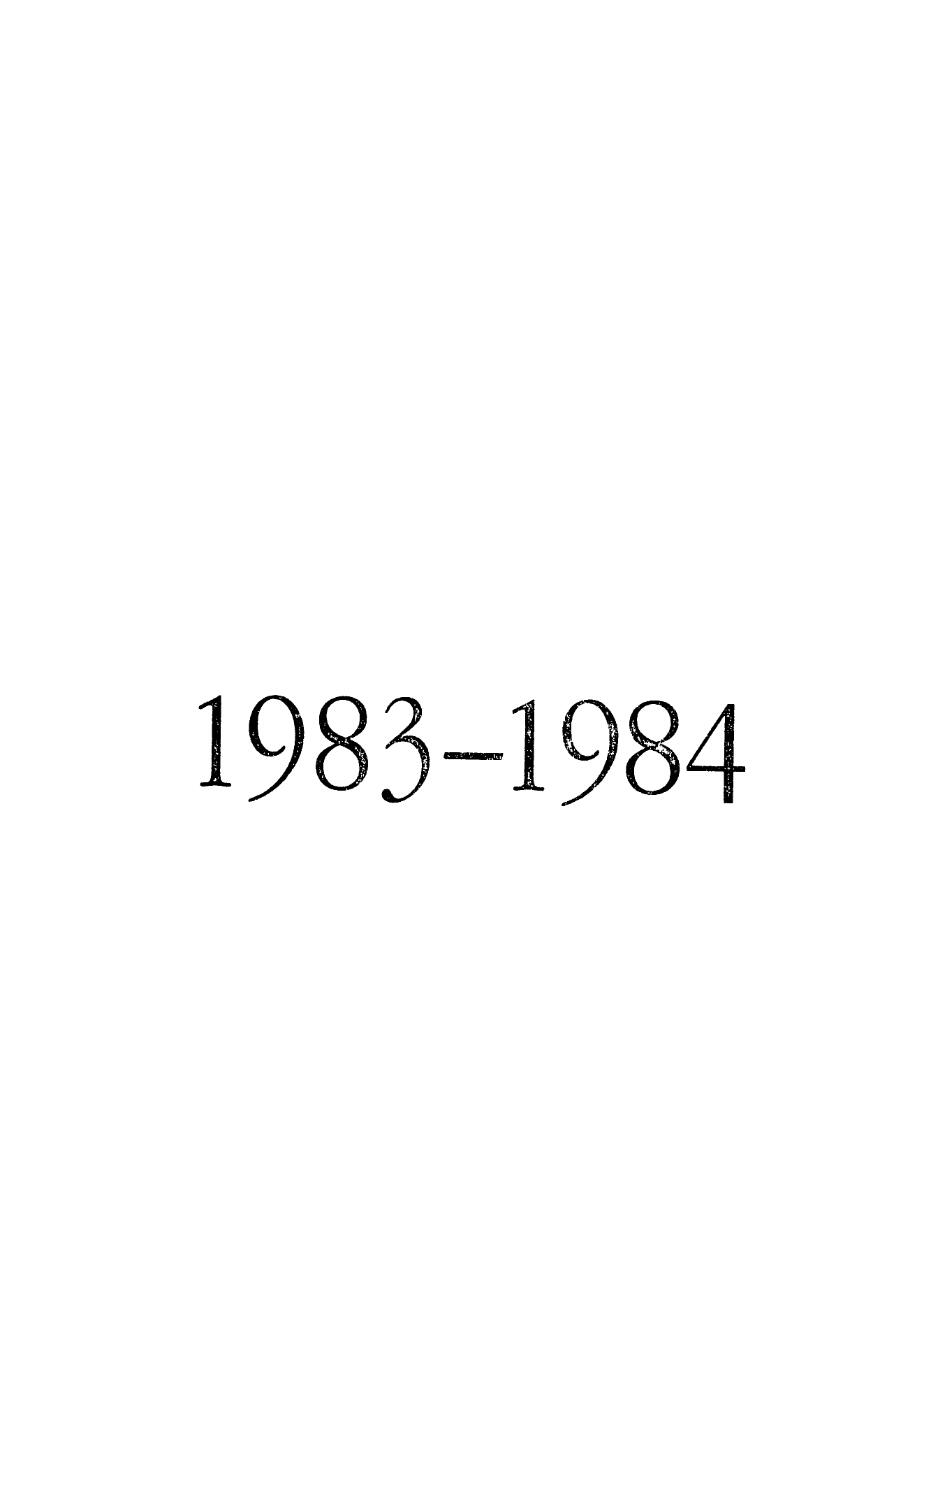 1983—1984